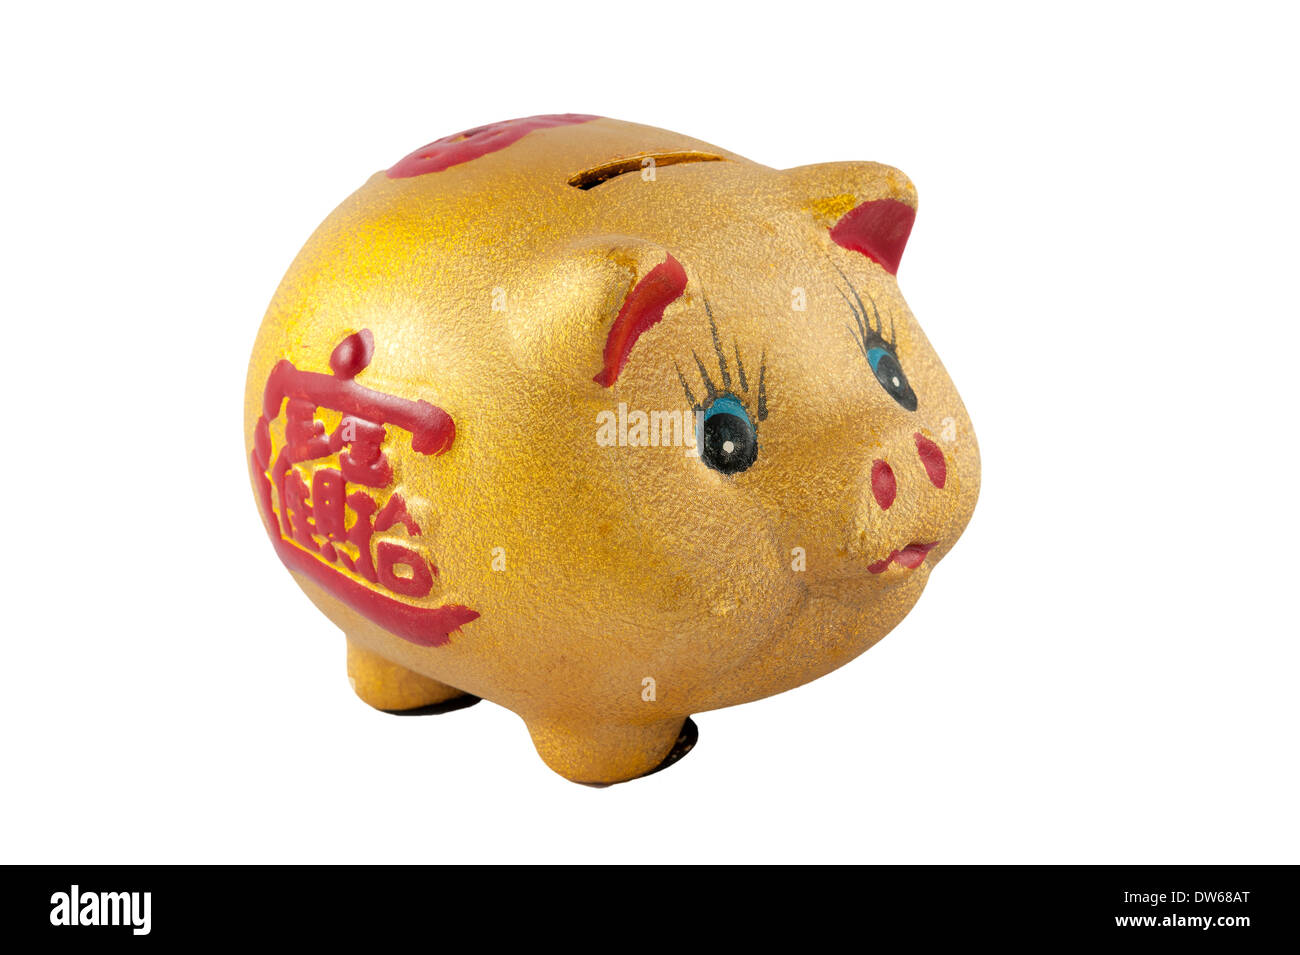 Piggy bank photo isolated on white background Stock Photo